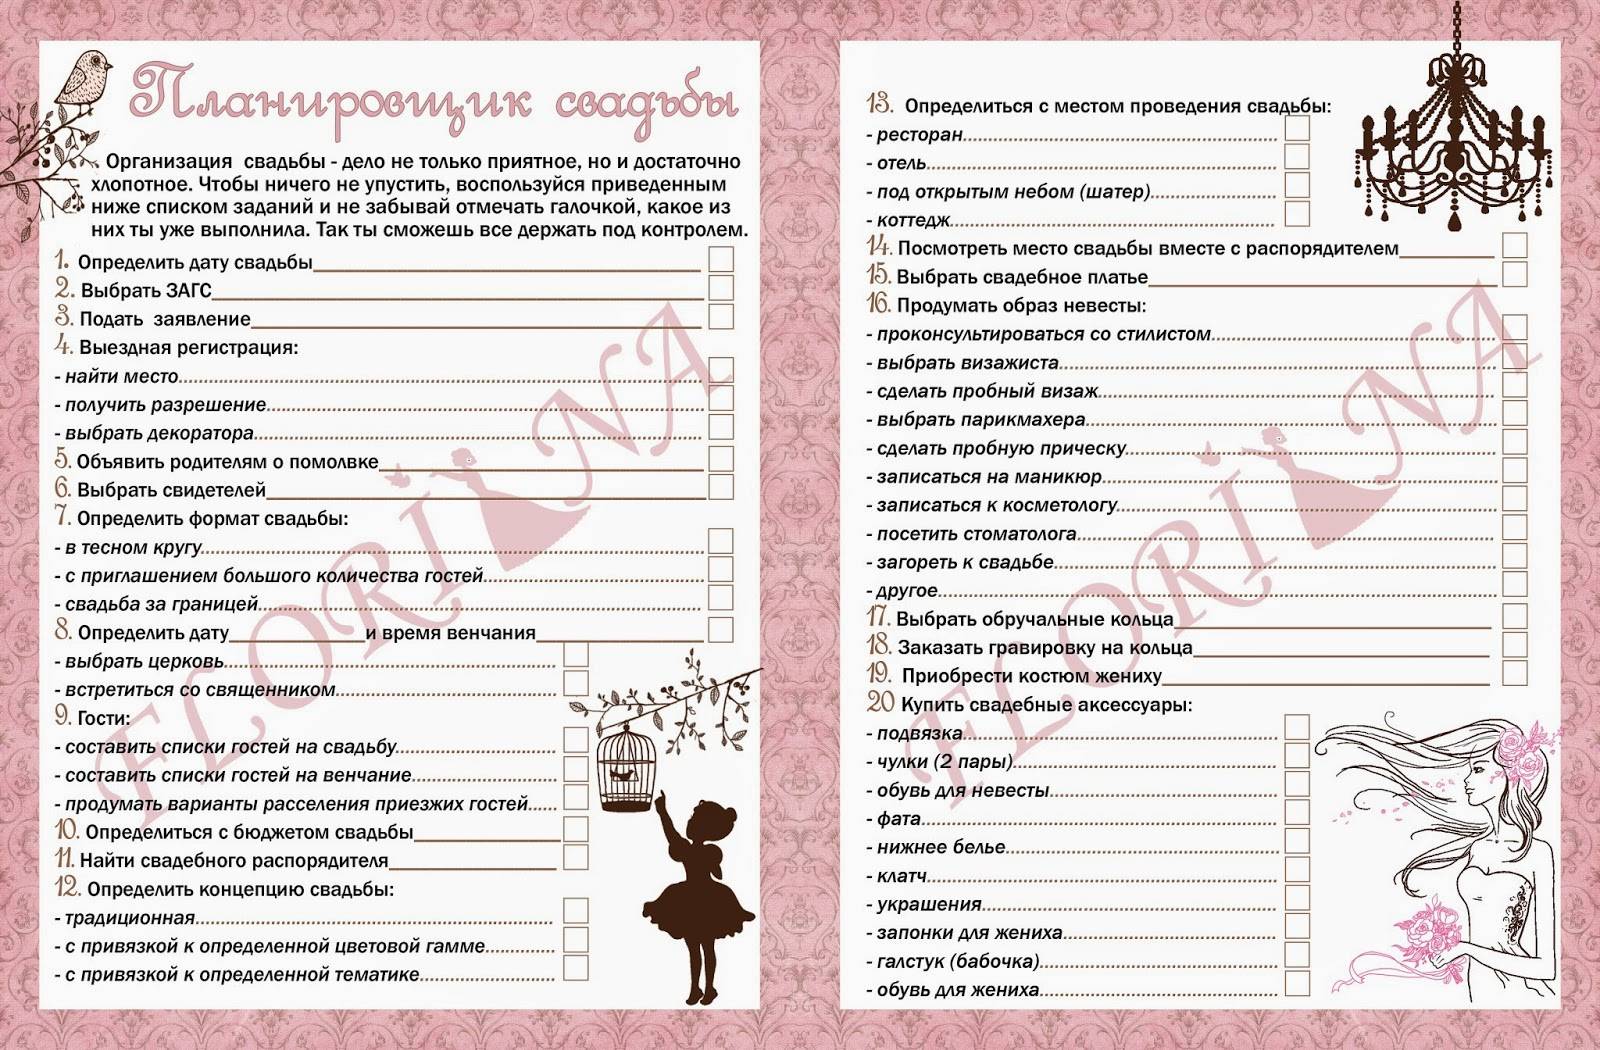 Идеальное меню для свадьбы: как составить меню на 20-50 человек? nevessta.ru